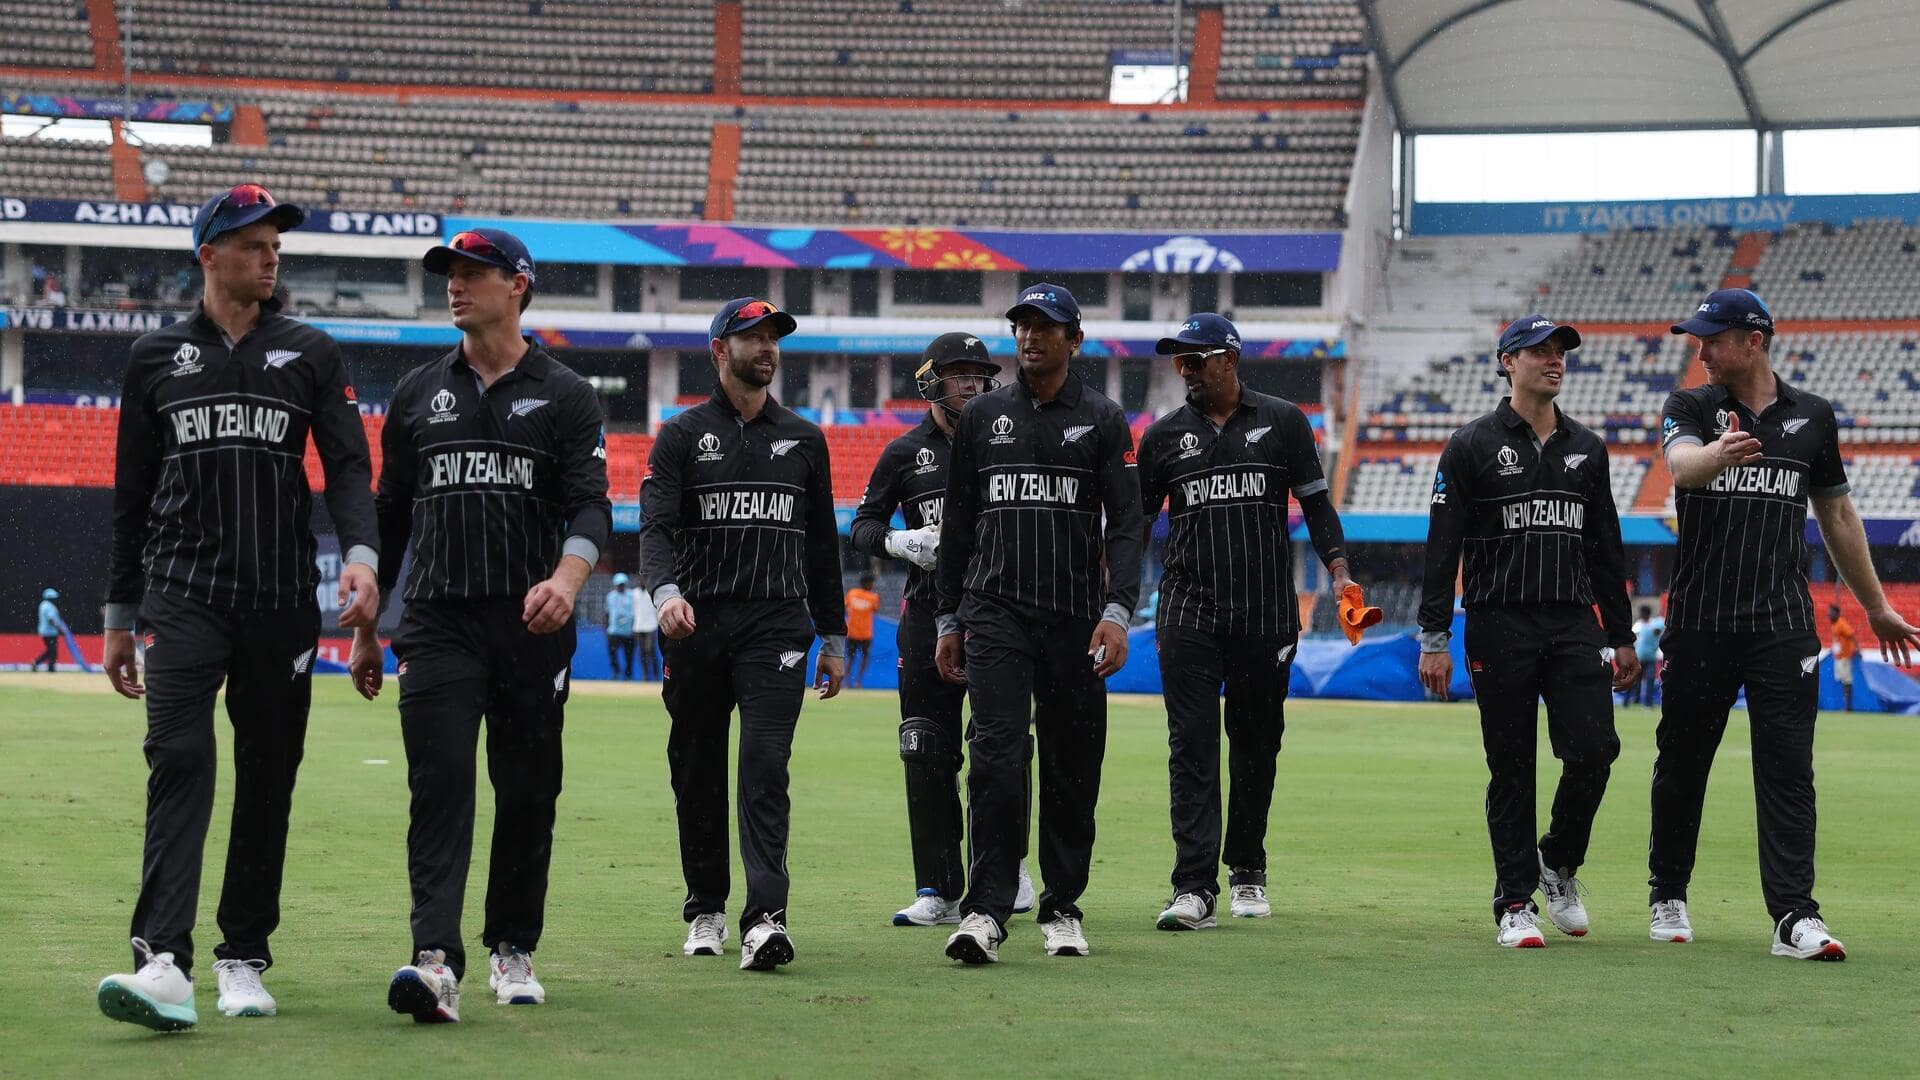 बांग्लादेश के खिलाफ वनडे सीरीज के लिए न्यूजीलैंड टीम घोषित, 3 खिलाड़ियों को पहली बार मौका